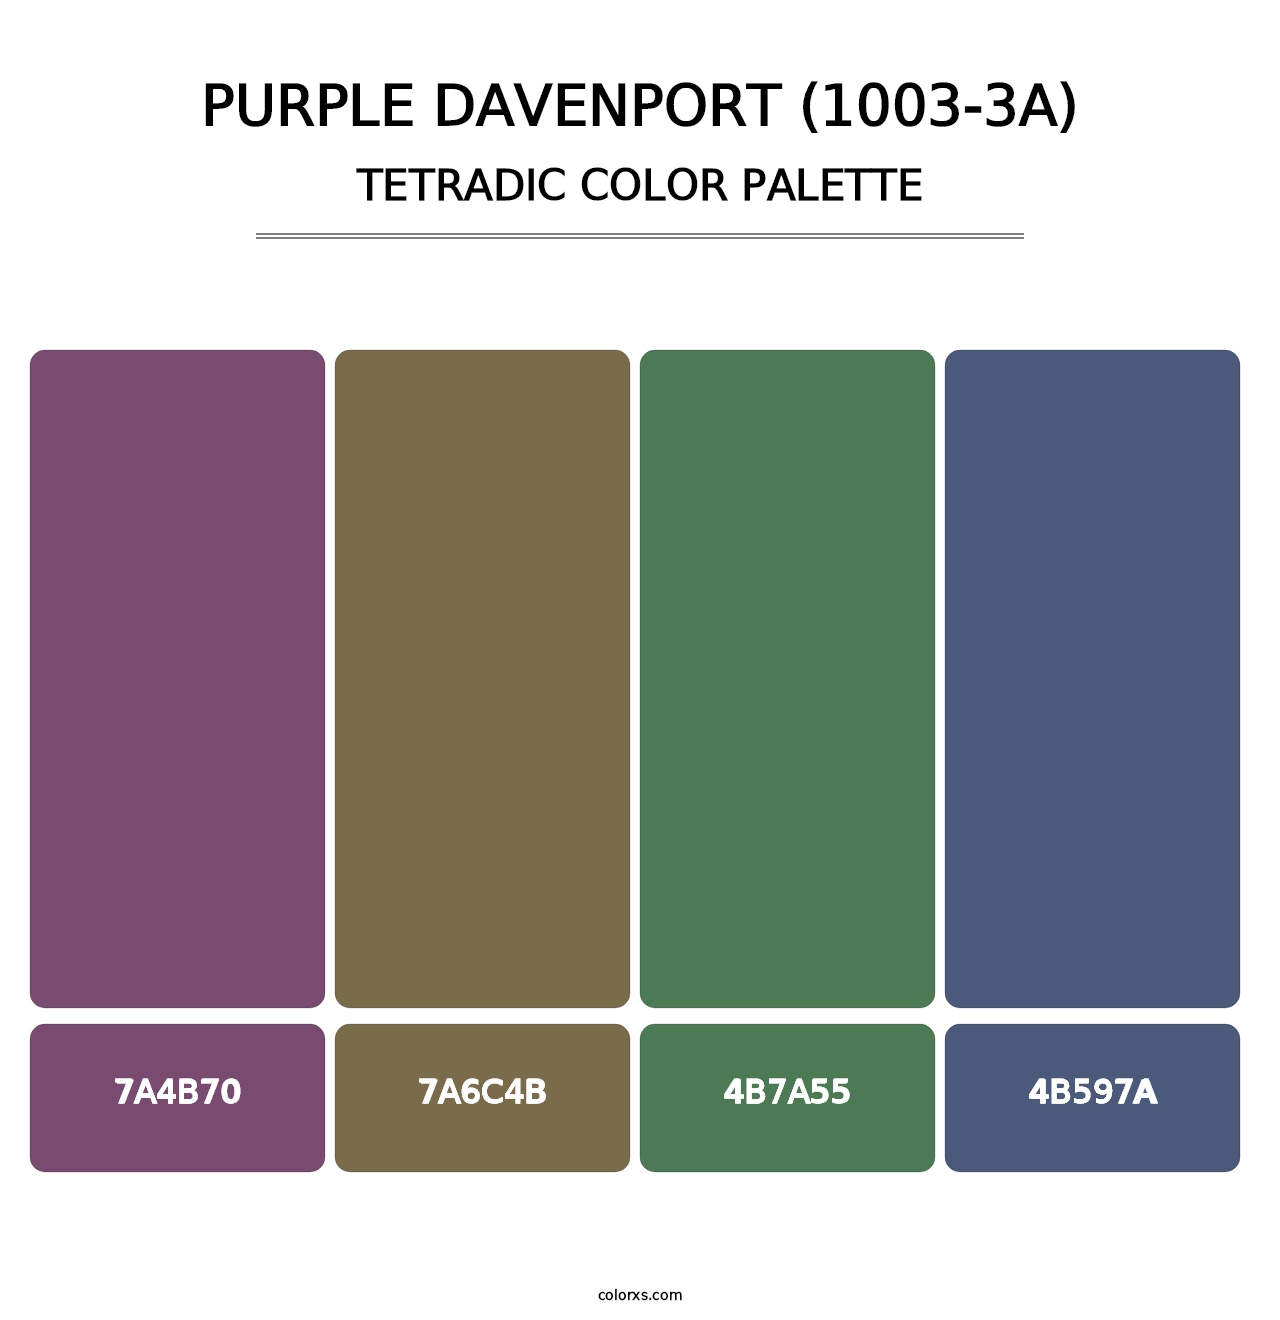 Purple Davenport (1003-3A) - Tetradic Color Palette